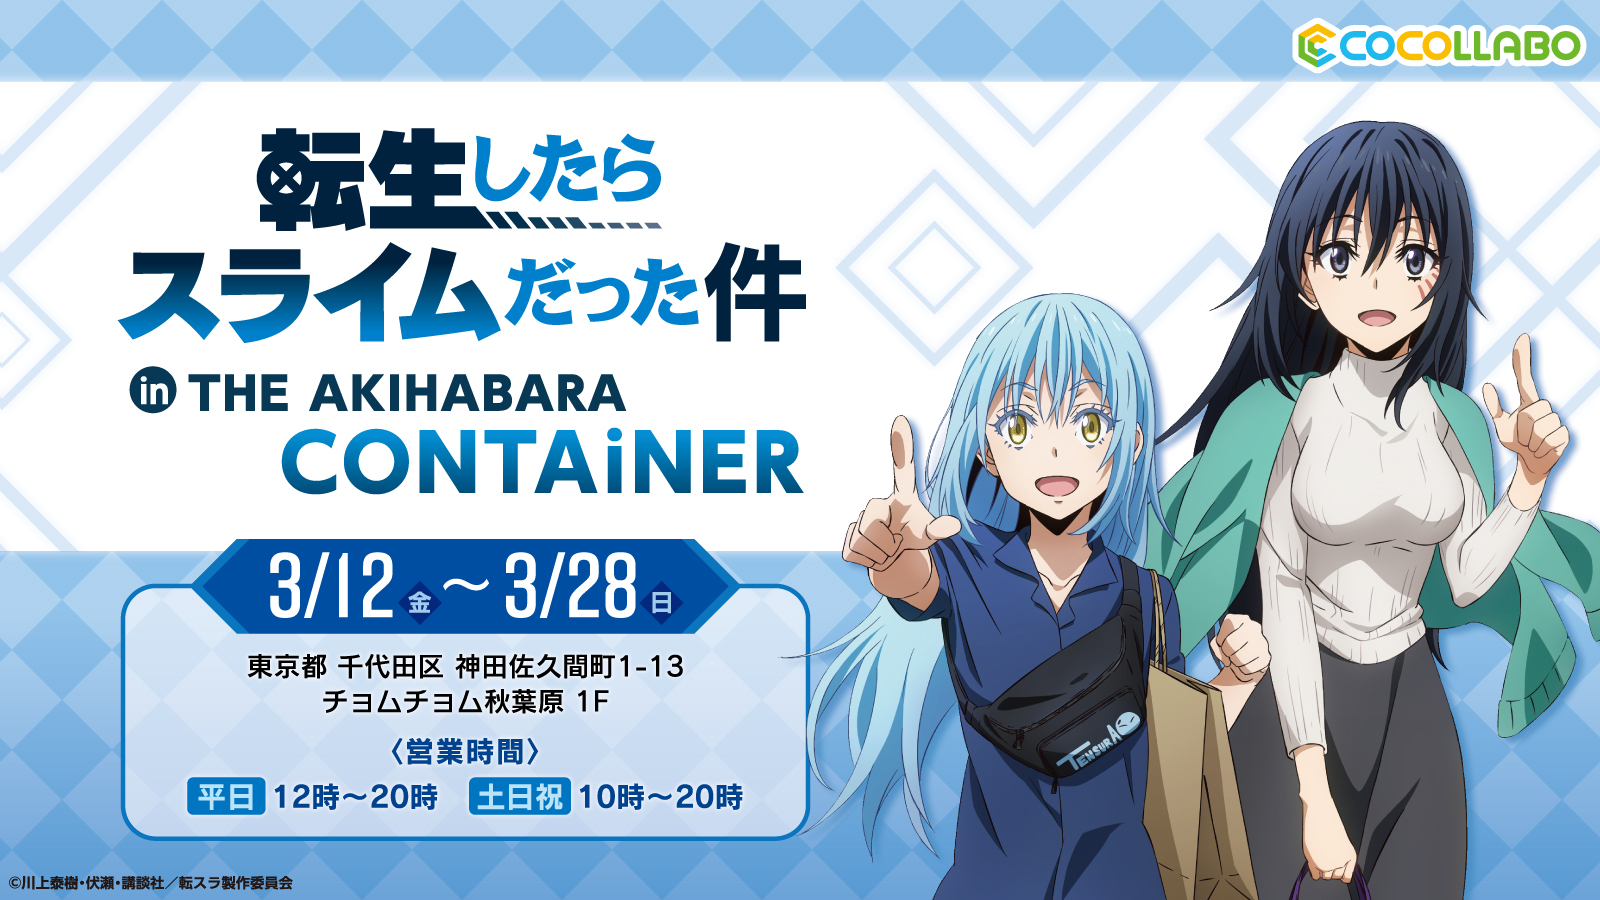 Tvアニメ 転生したらスライムだった件 のオンリーショップが The Akihabara Container にて3月12日 金 より開催 Newscast